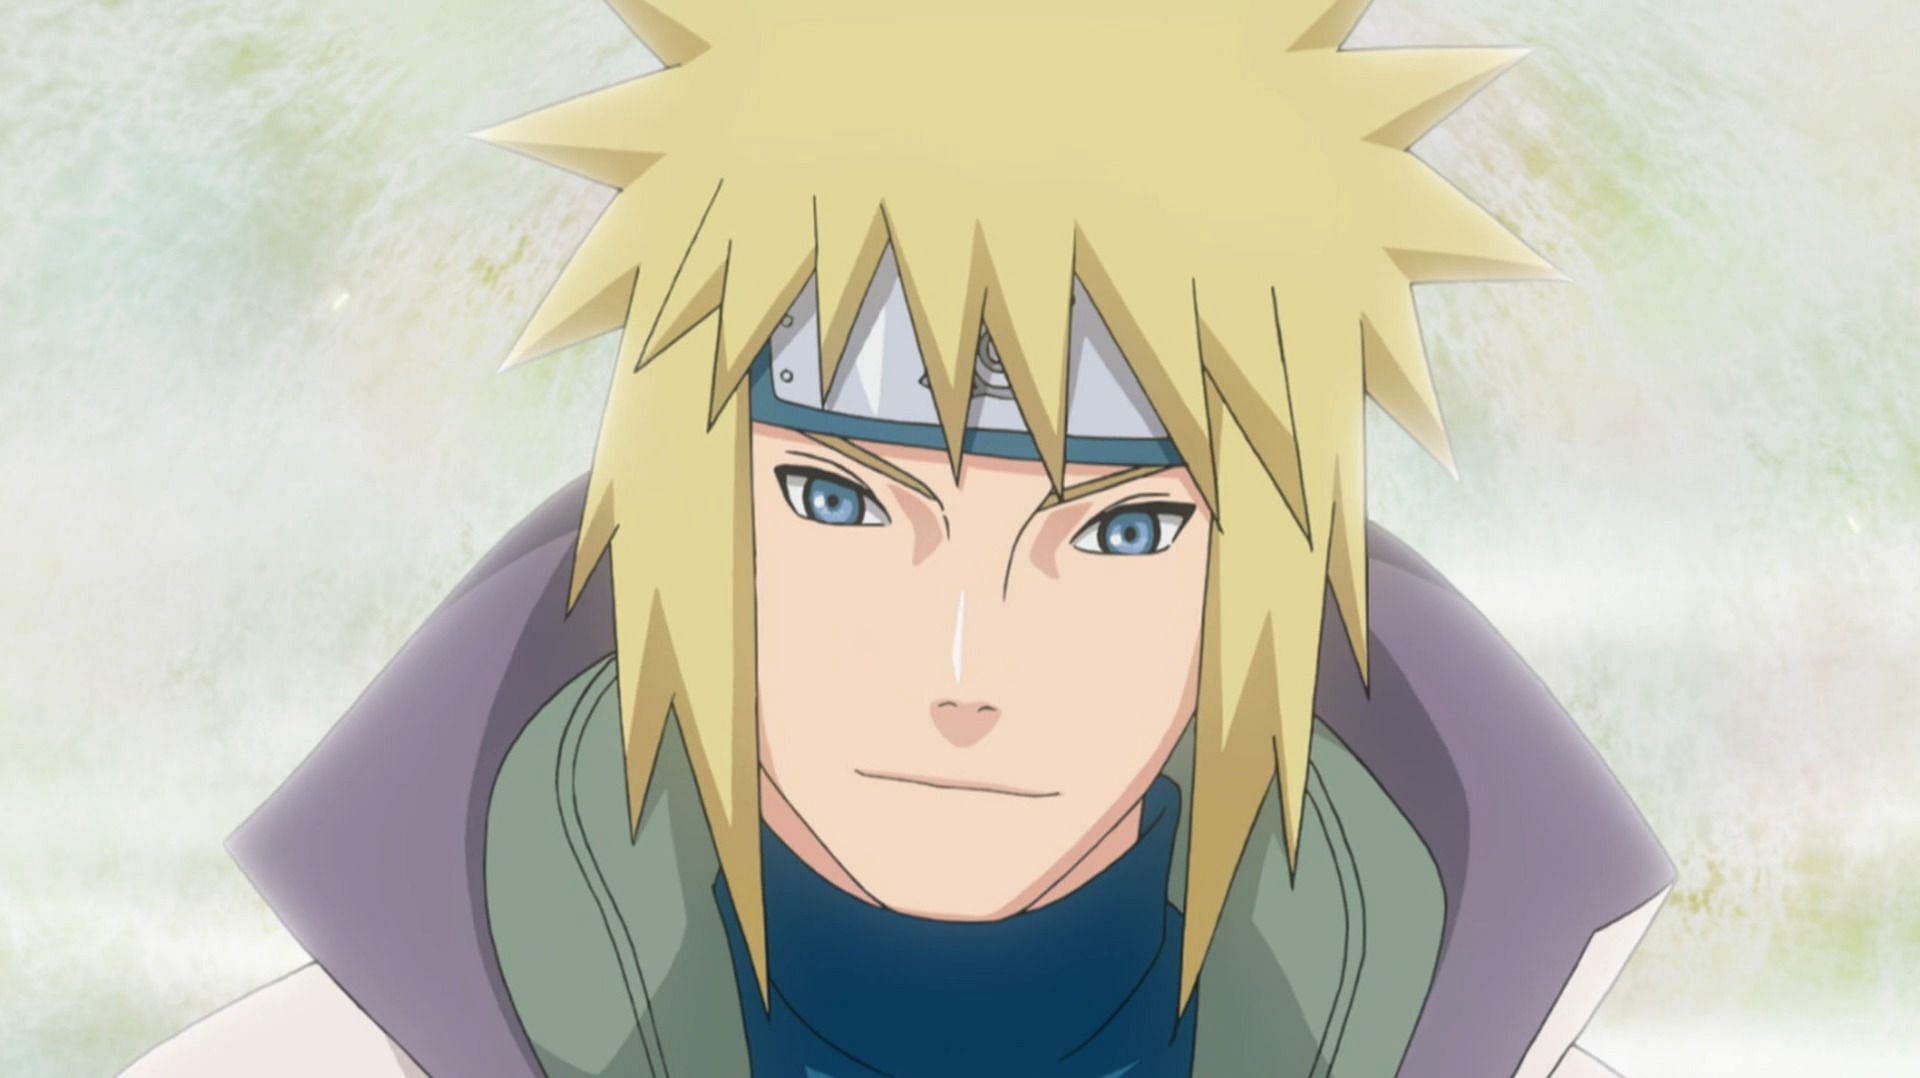 Minato Namikaze as seen in Naruto Shippuden (Image via Studio Pierrot)